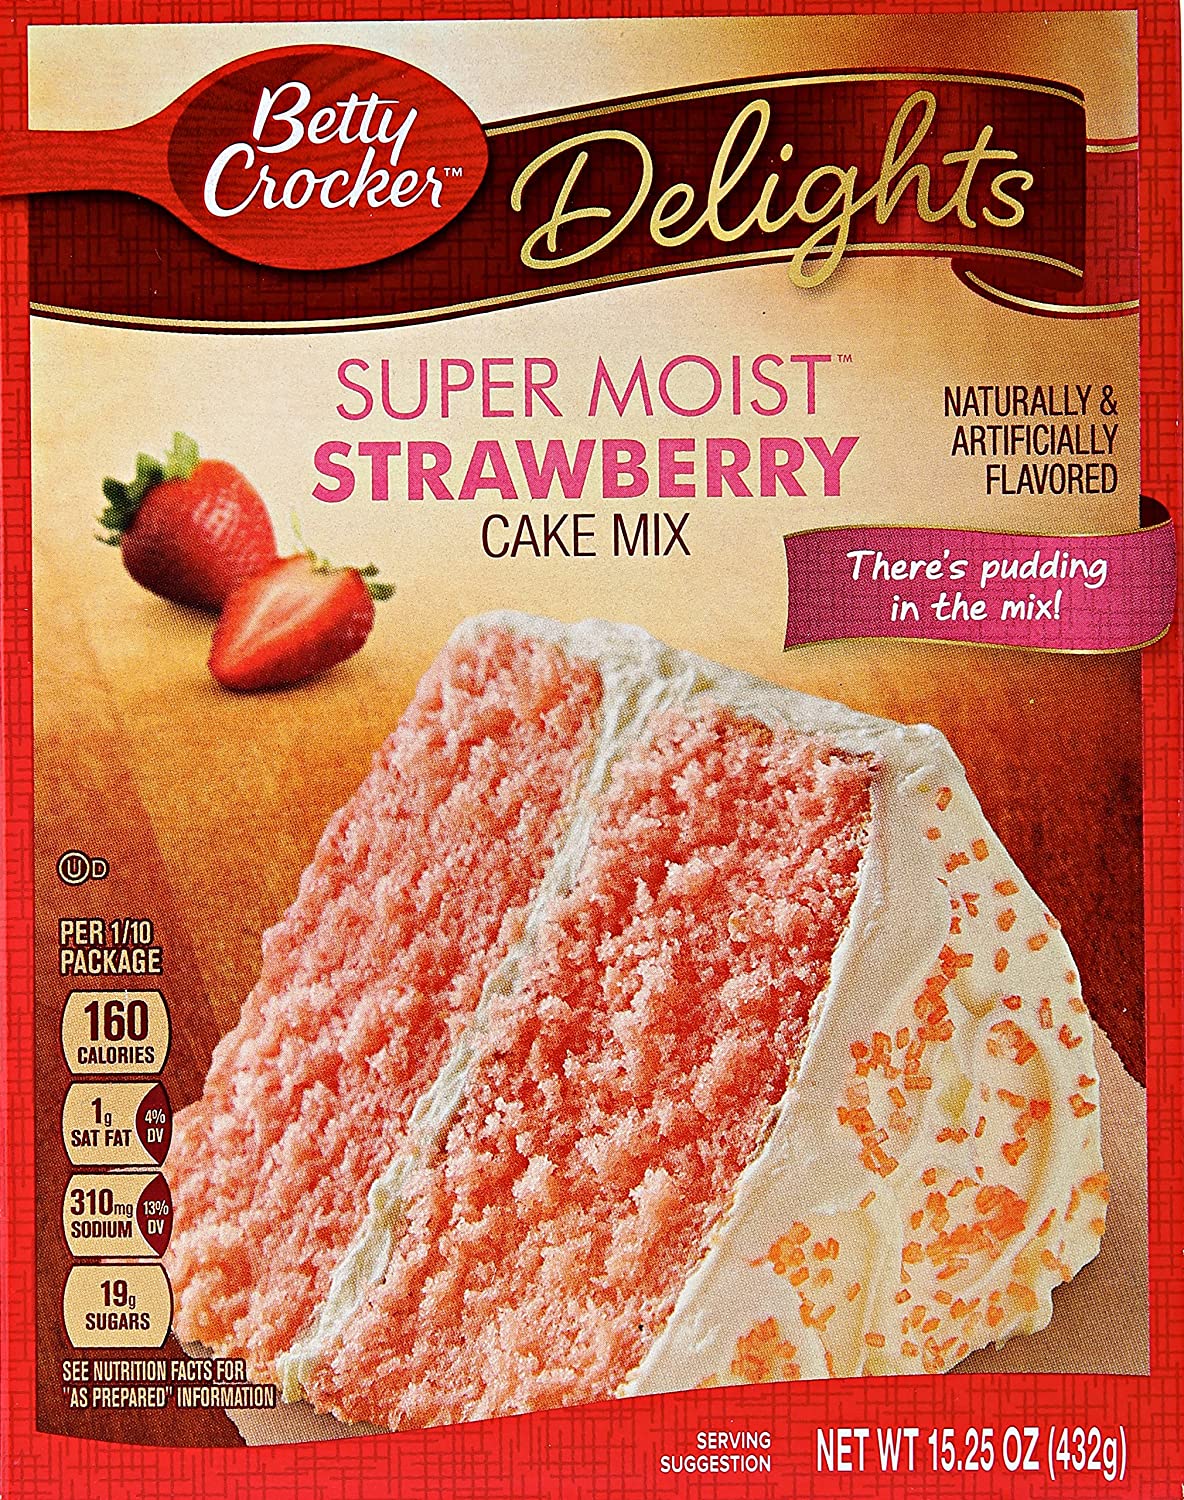 夏のデザート、誕生日のお祝いなどに最適なBetty Crocker スーパー モイスト ストロベリー ケーキ ミックスは、 あらゆる甘いお菓子のニーズを満たす簡単なベーキングソリューションです。 数分で焼く準備ができるこのストロベリーケーキは、おいしいフロスティングをトッピングしたり、 Betty Crockerの多くのデザートレシピの1つを使って何か新しいものを試すこともできます。 さらに、カップケーキミックスとしても使えます！ 甘みと手軽さの絶妙なバランスでご家族みんなでお楽しみください。